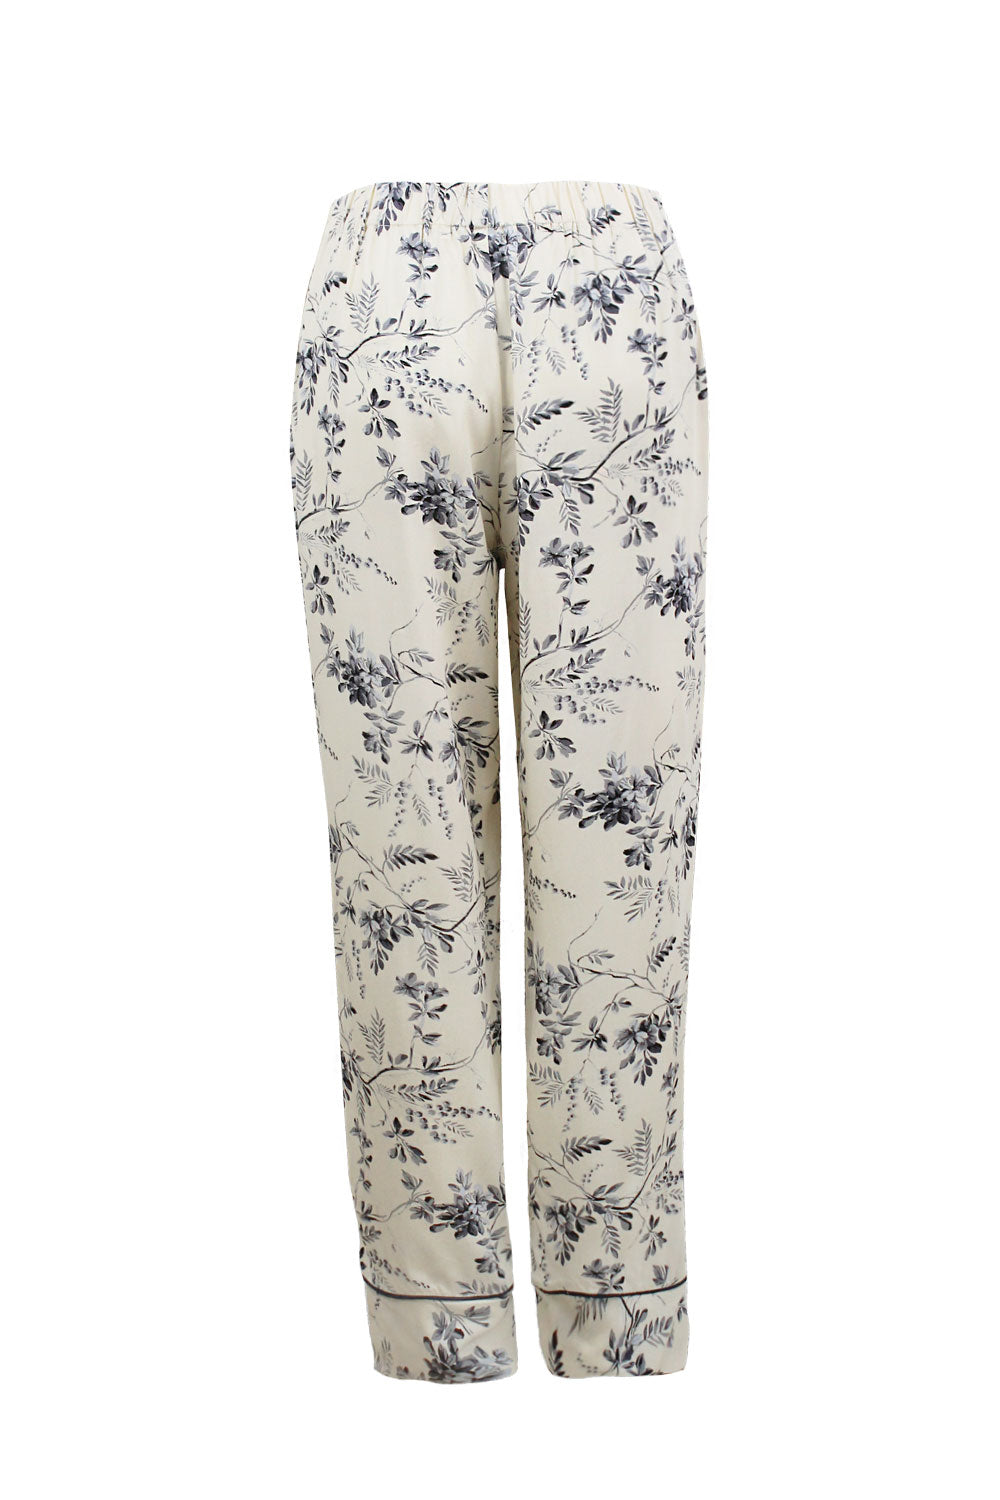 Willow Long Sleeve Pyjama Set Cream/Navy Pyjamas